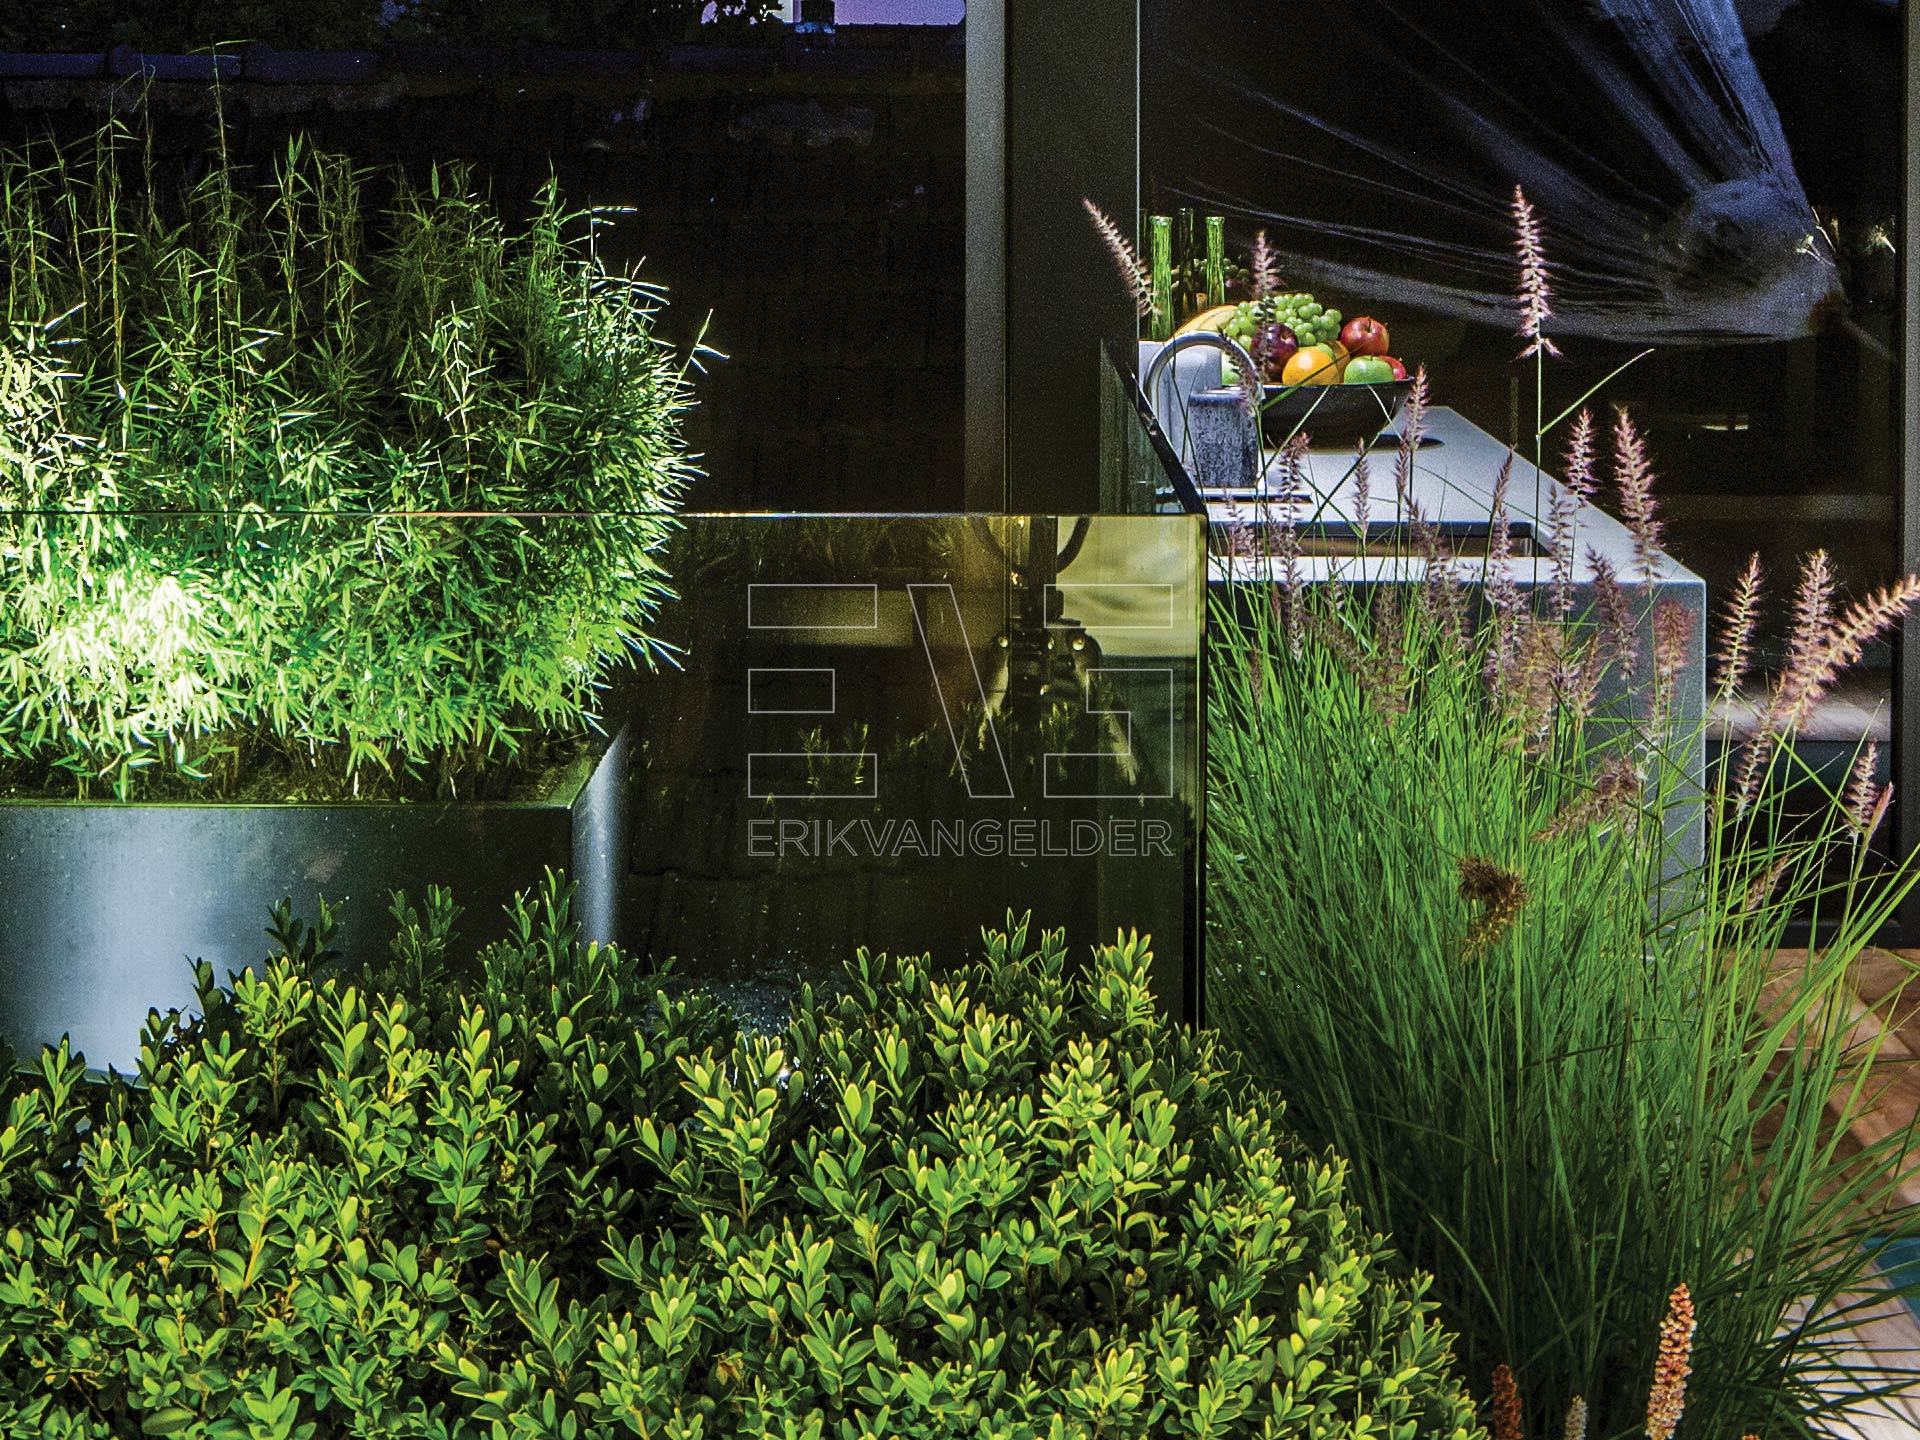 Exclusive roof garden dakterras met moderne buitenkeuken avondsfeer beplanting luxury erikvangelder tuinarchitect tuindesign sfeervol